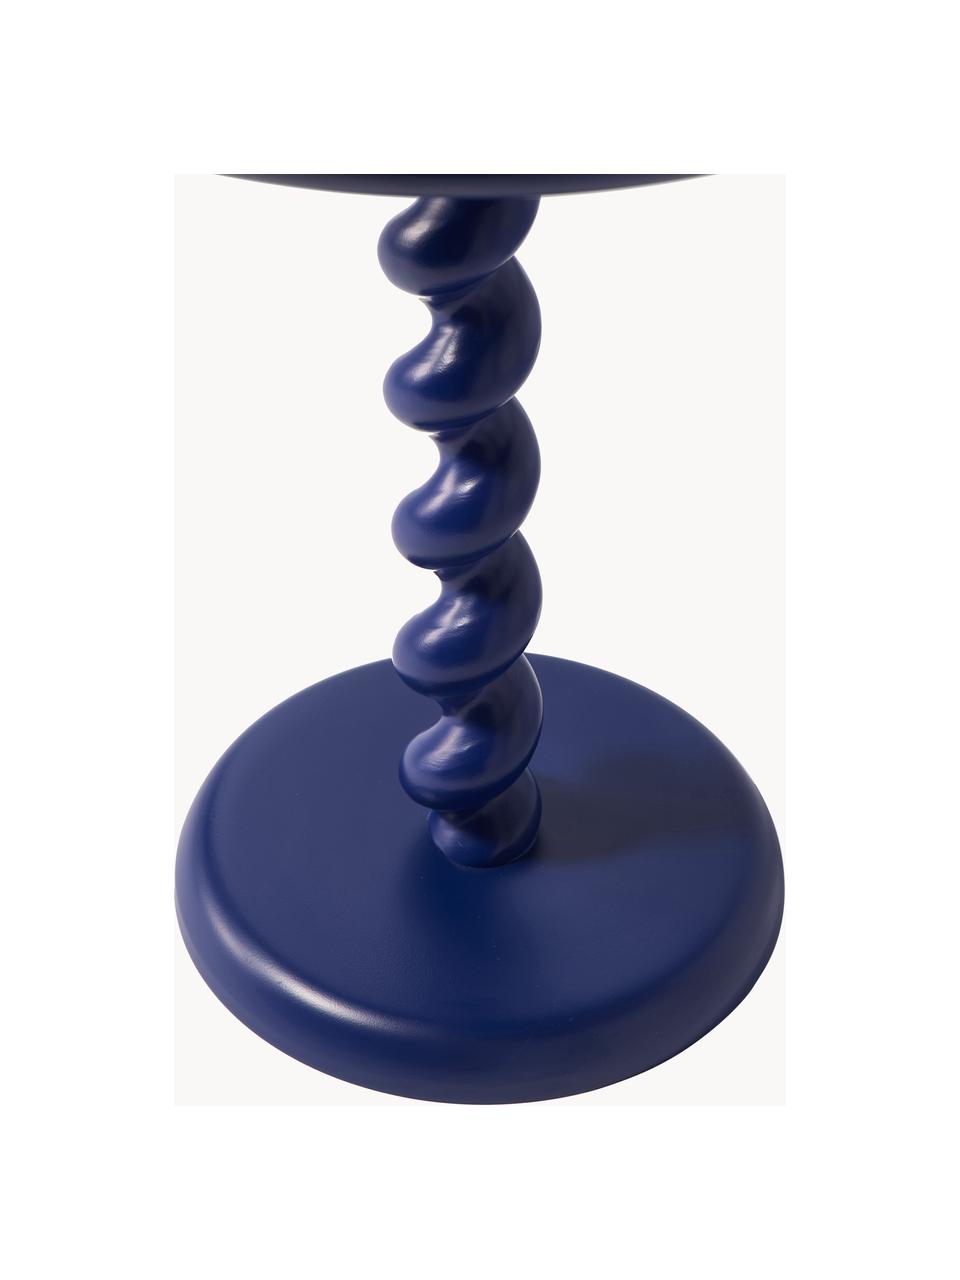 Tavolino rotondo Twister, Alluminio laccato a polvere, Blu scuro, Ø 46 x Alt. 56 cm